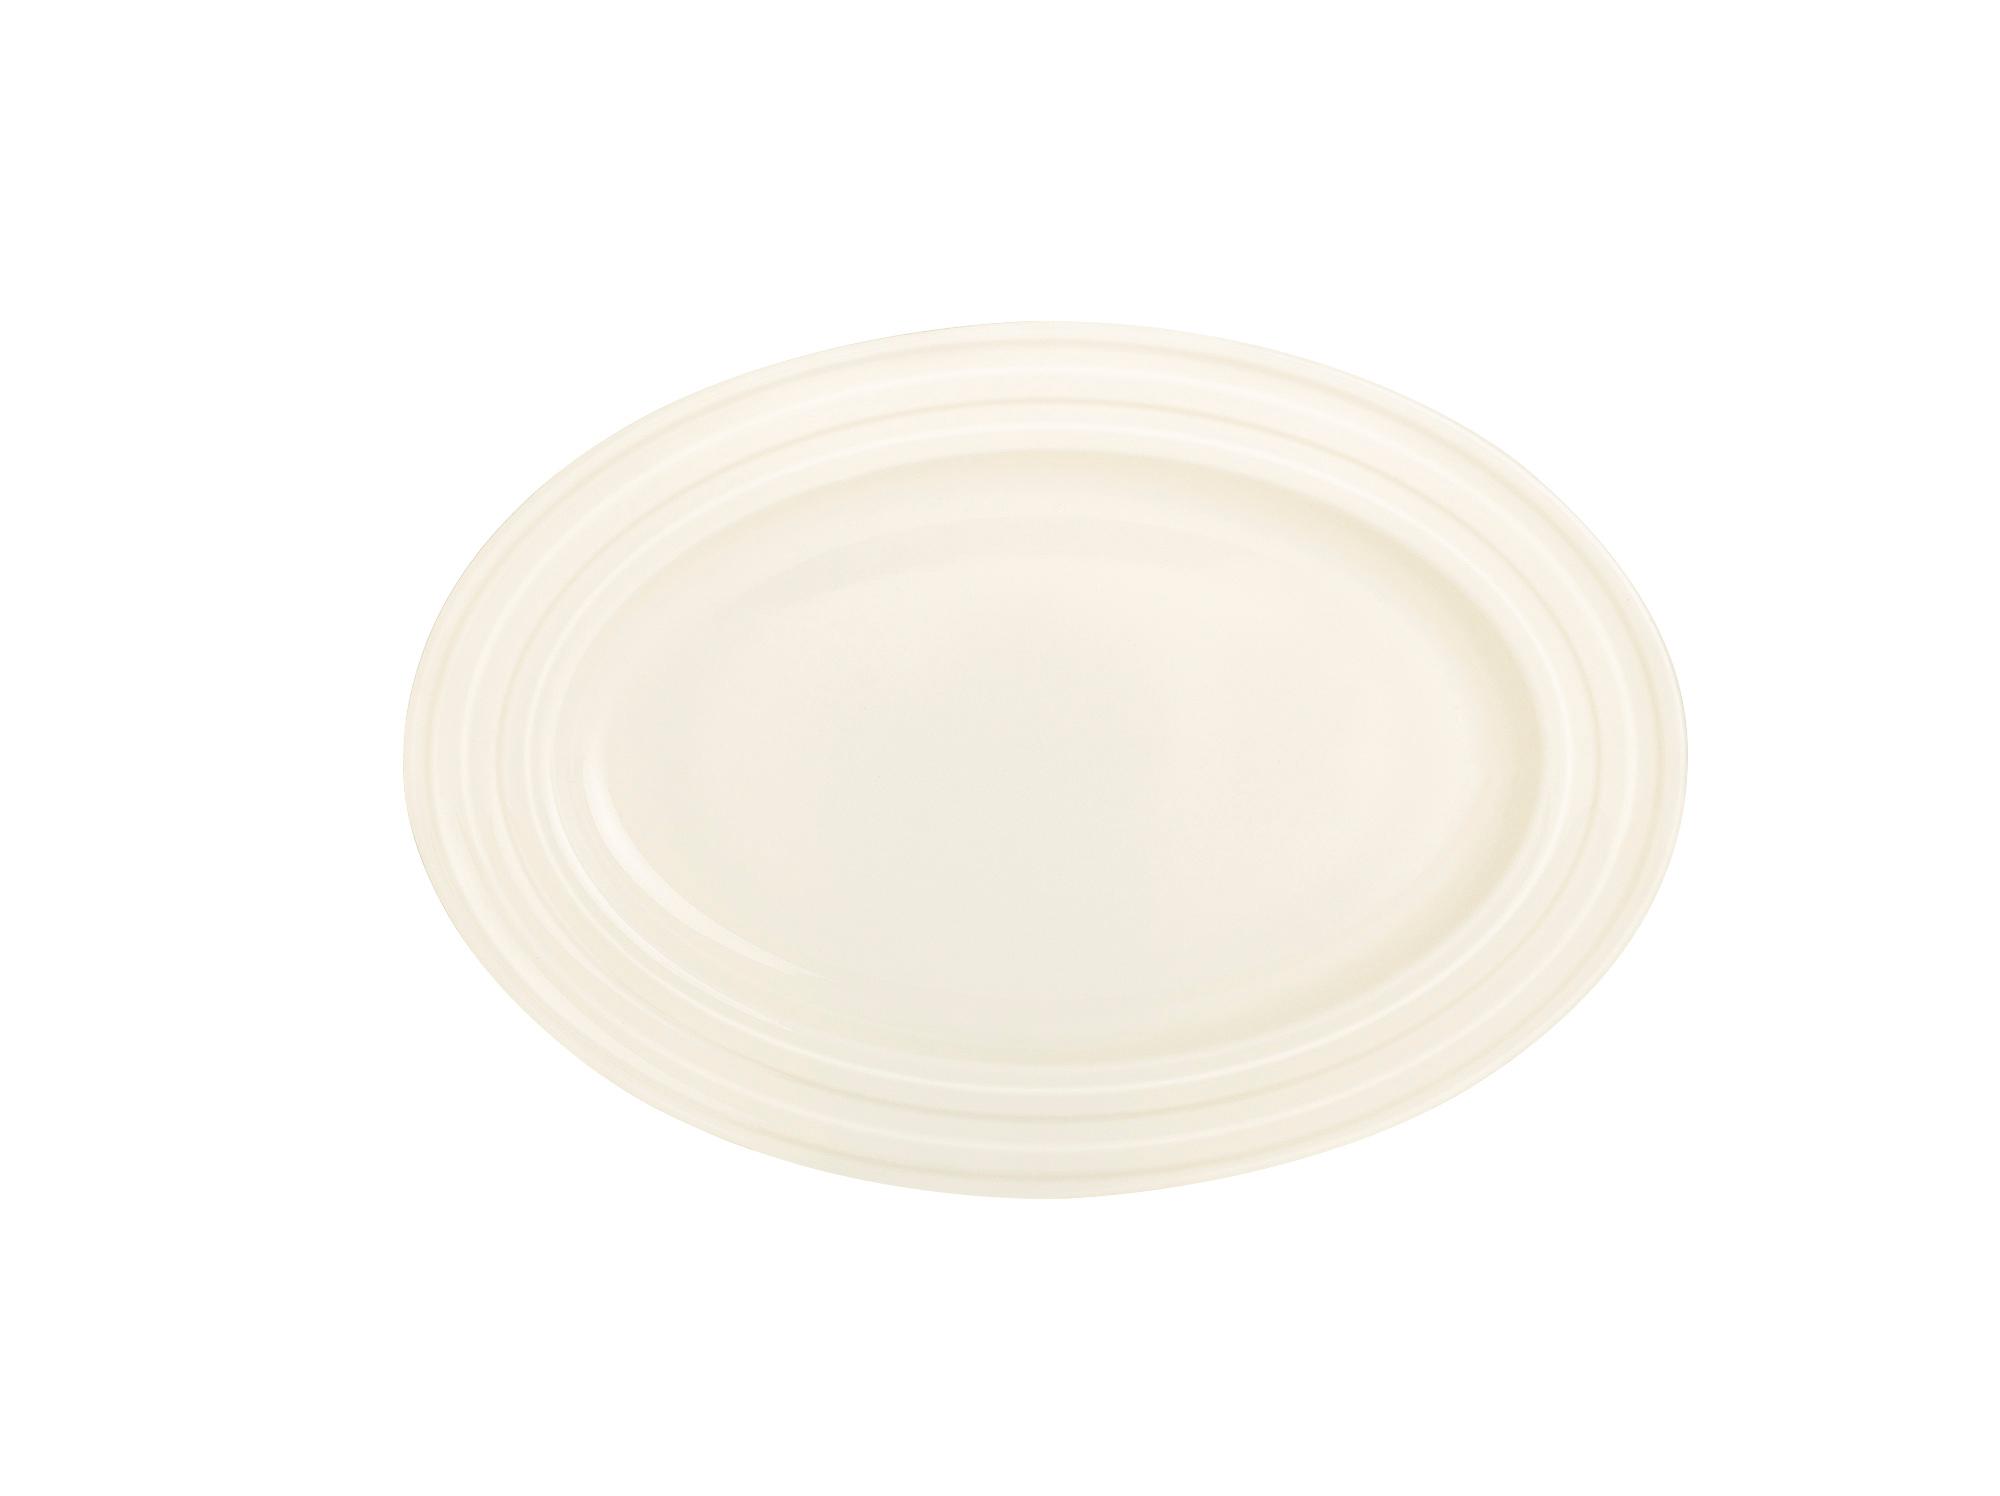 Perla oval dish, 240x170mm